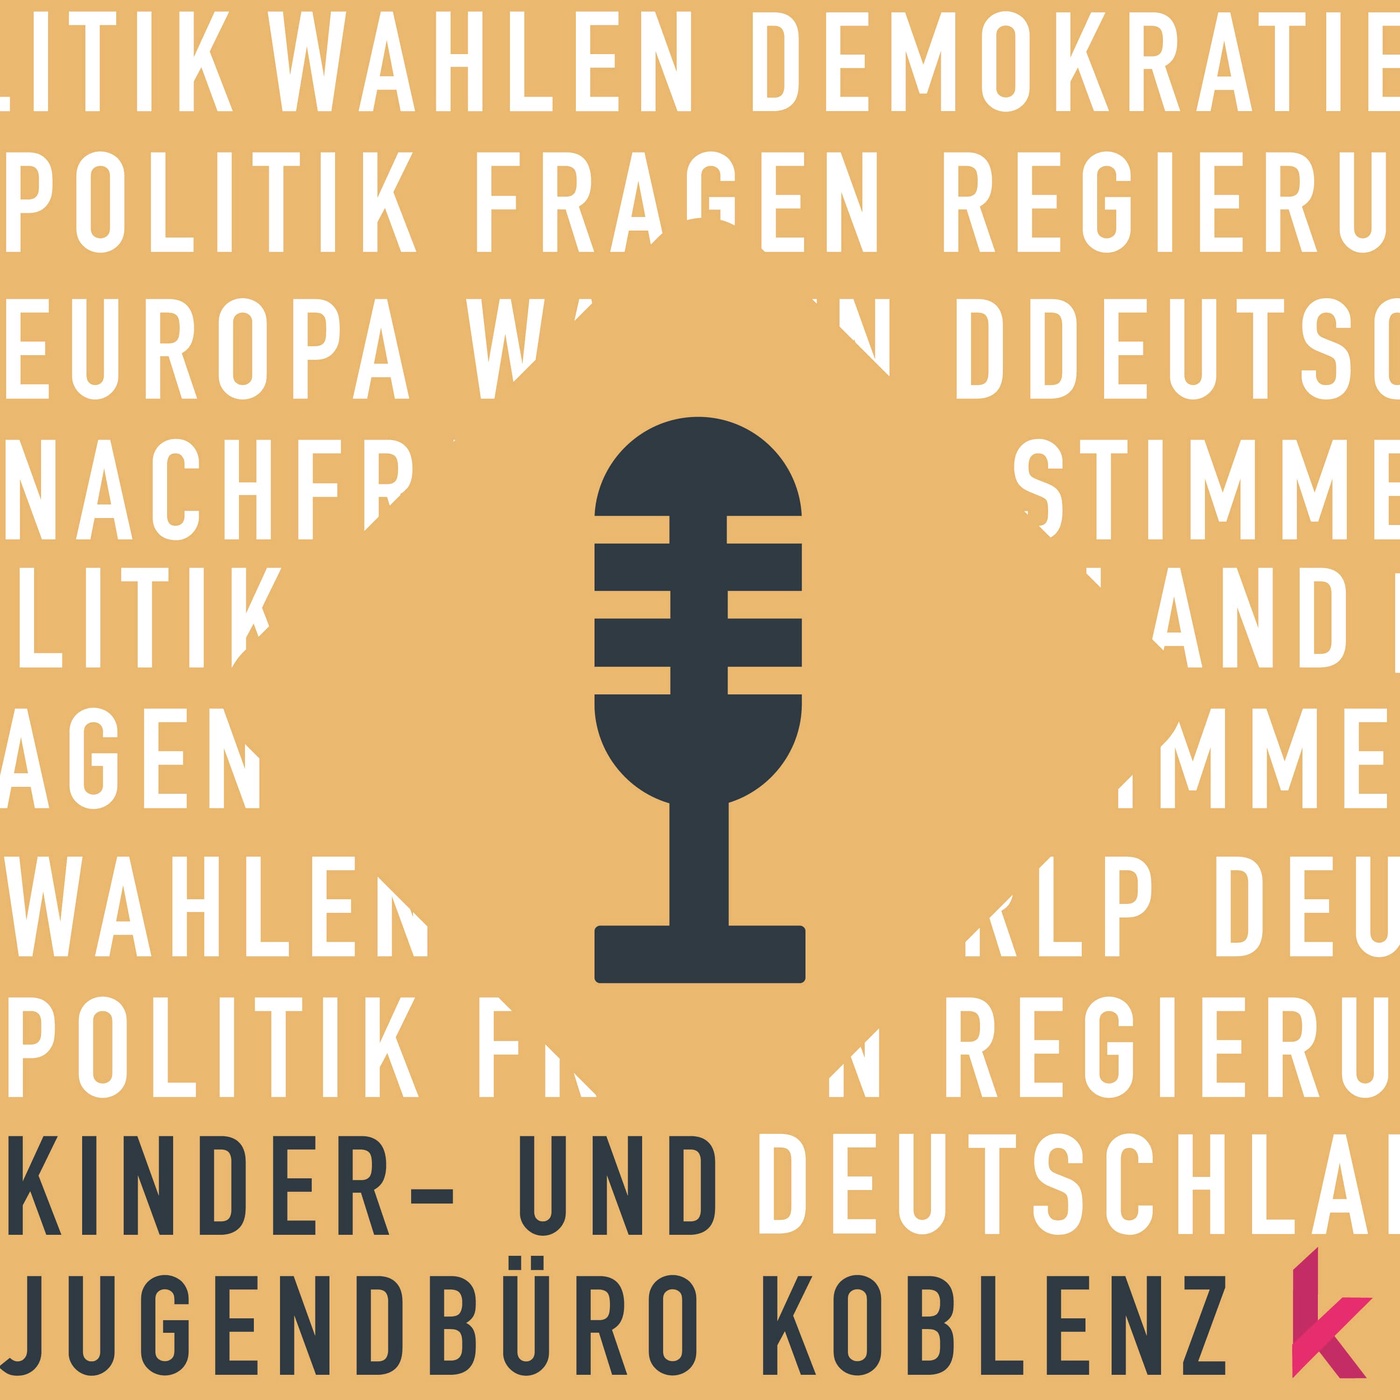 Trailer stimmberechtigt - Landtagswahl 2021